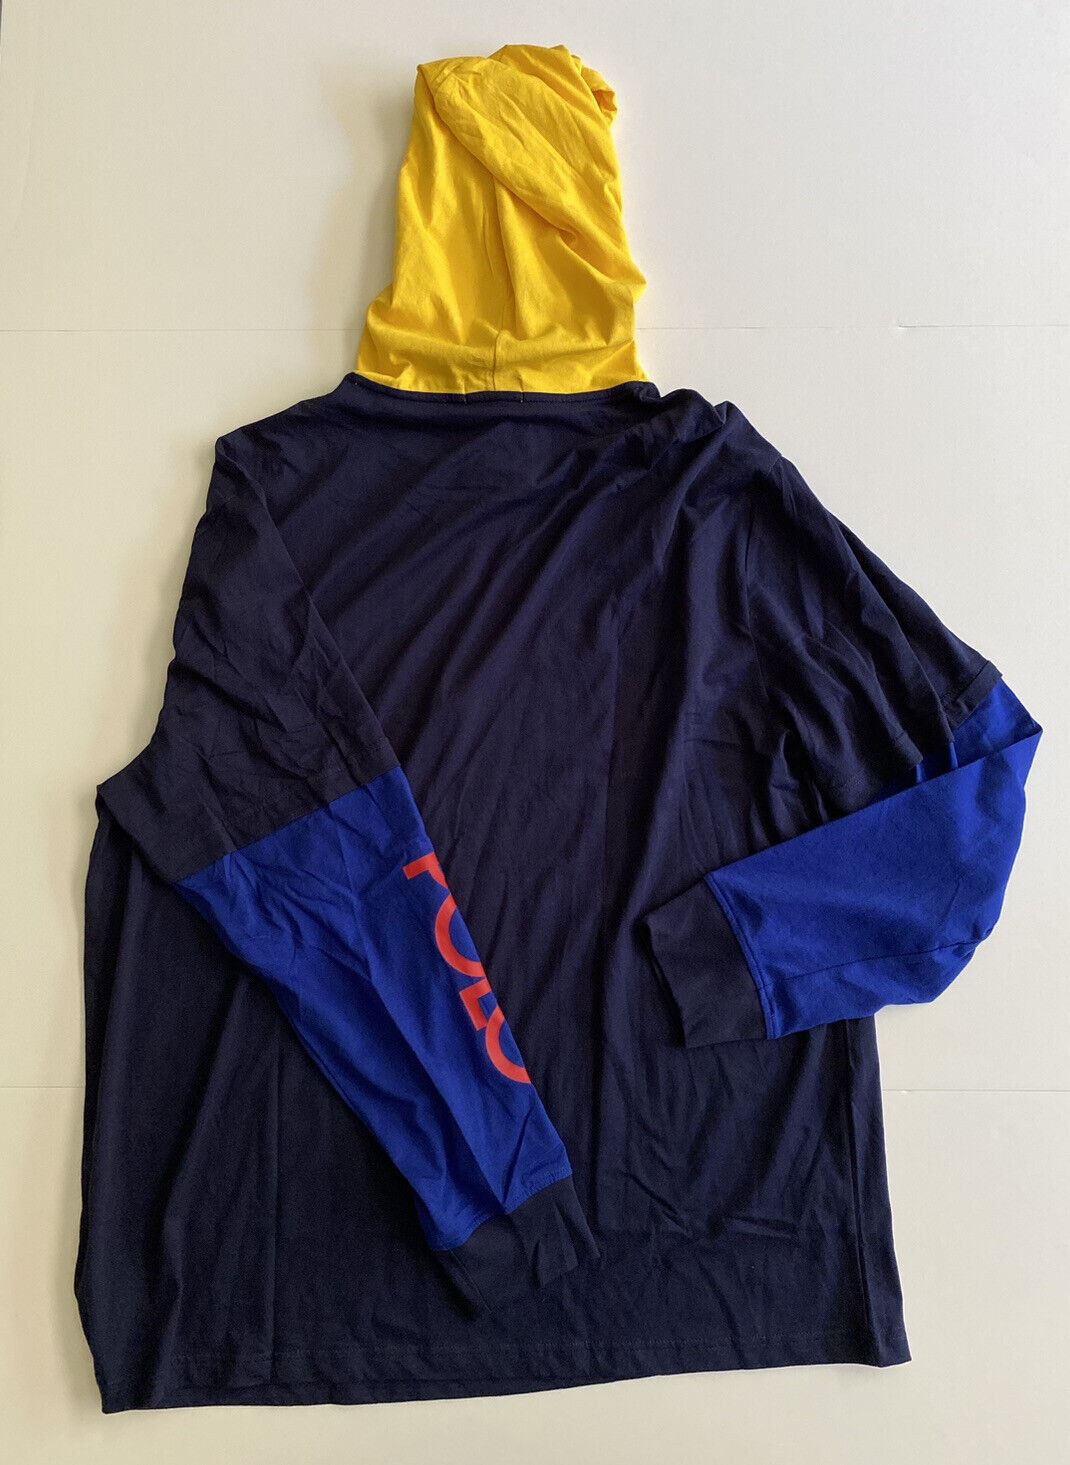 Толстовка с длинным рукавом и фирменным логотипом NWT Polo Ralph Lauren, темно-синяя, L 